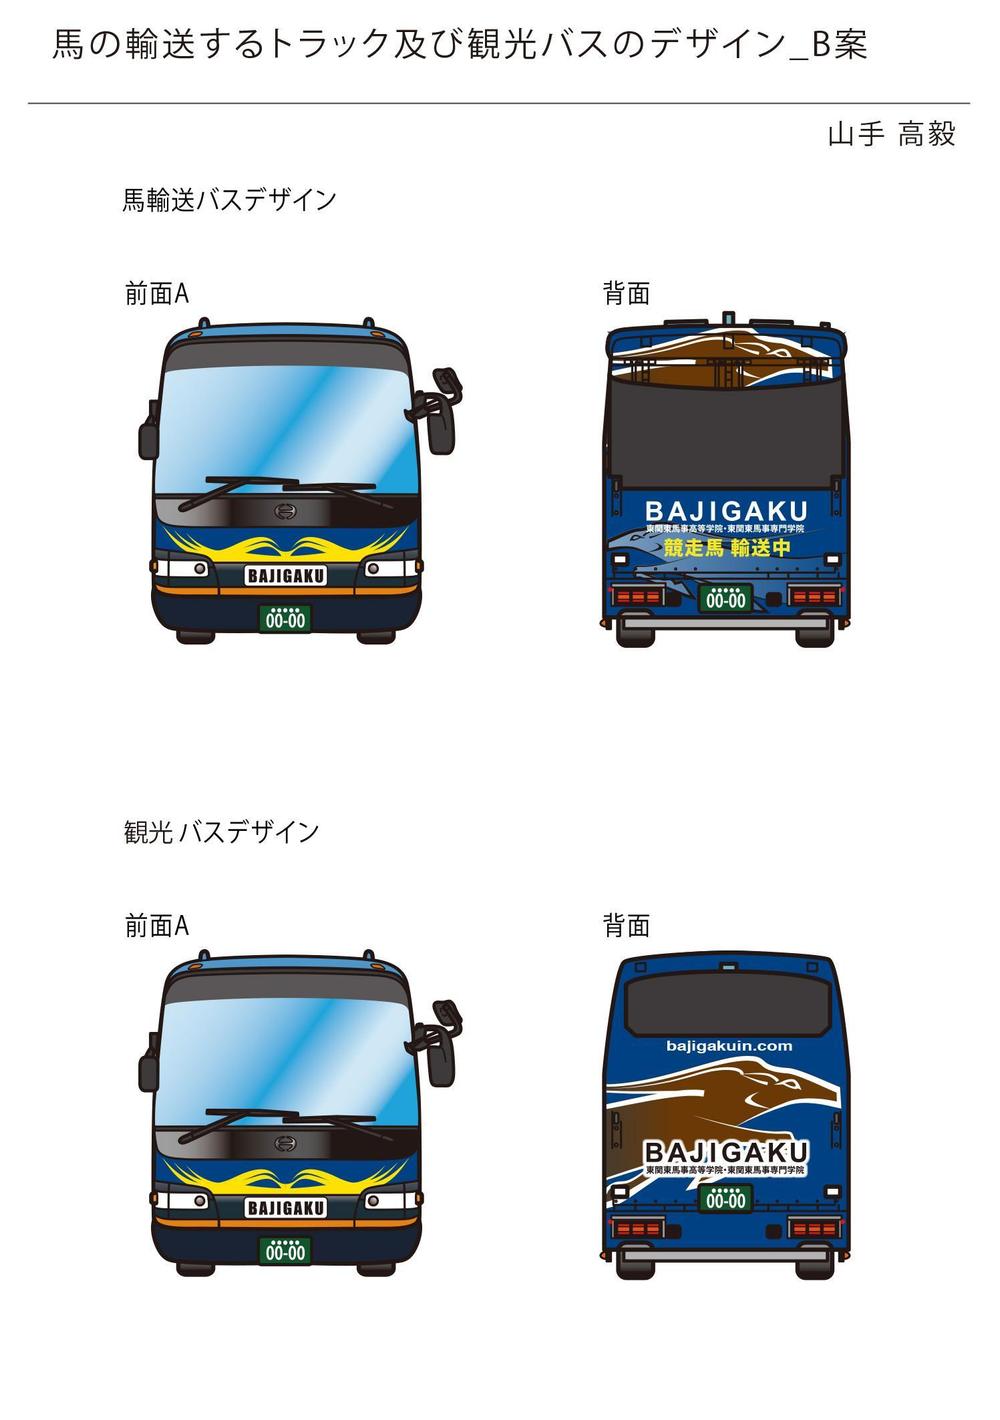 ☆★☆馬の輸送するトラック及び観光バスのデザインをお願いしたい！